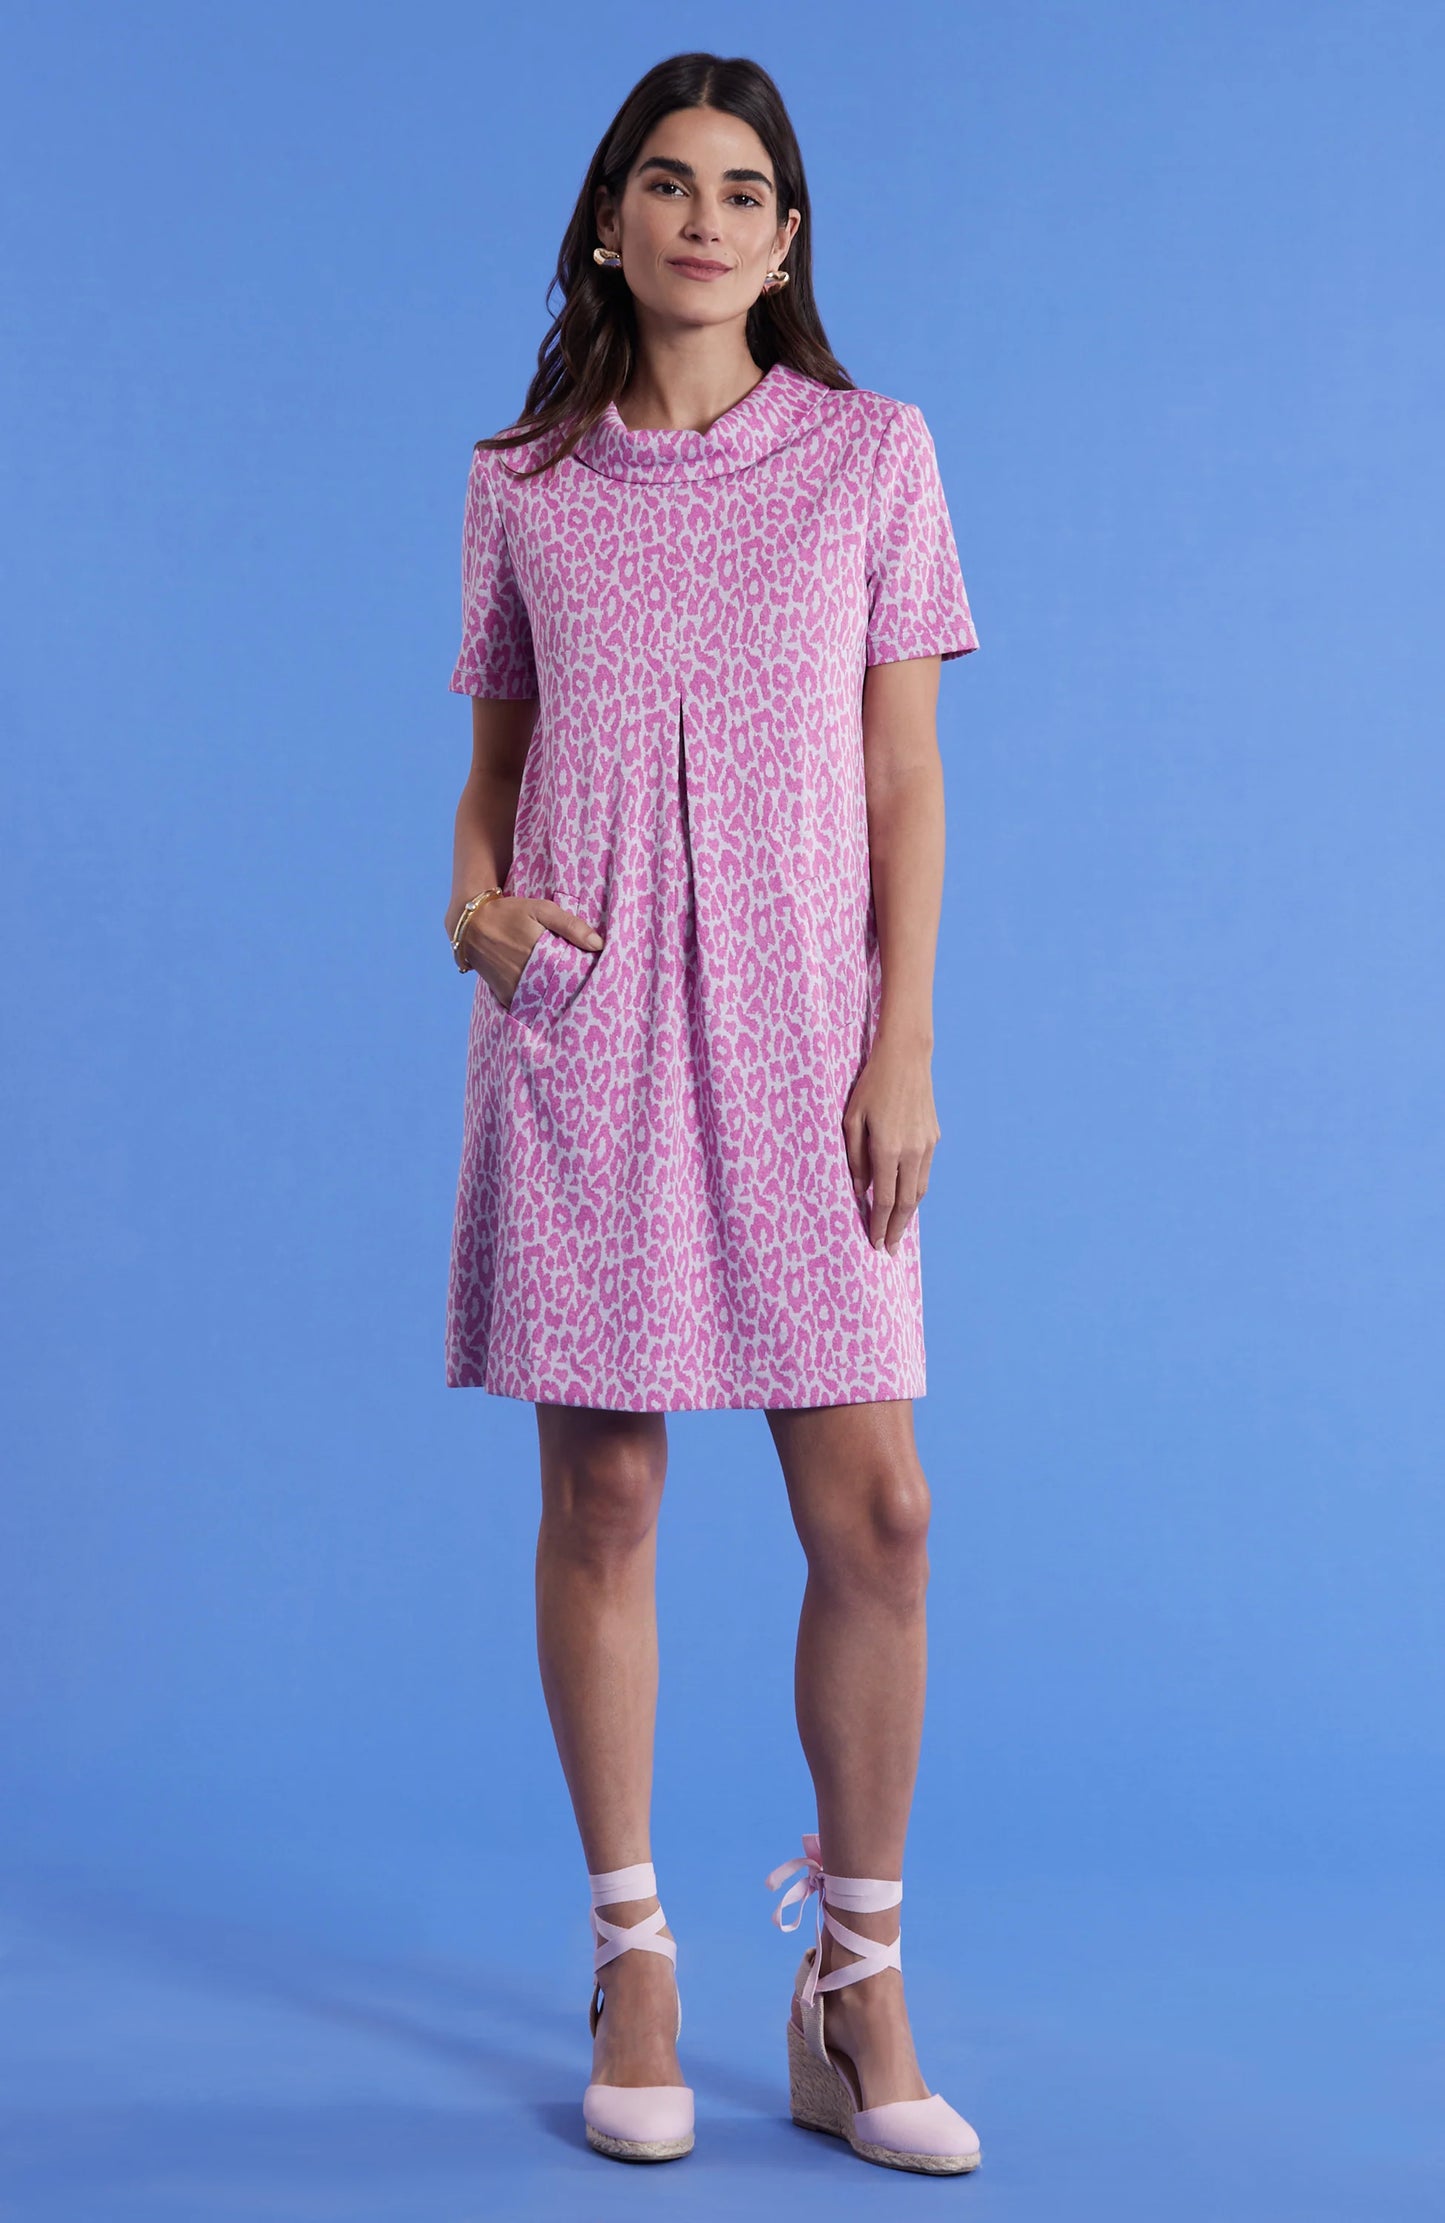 Kristen Knit Dress - Cheeky Pink Cheetah